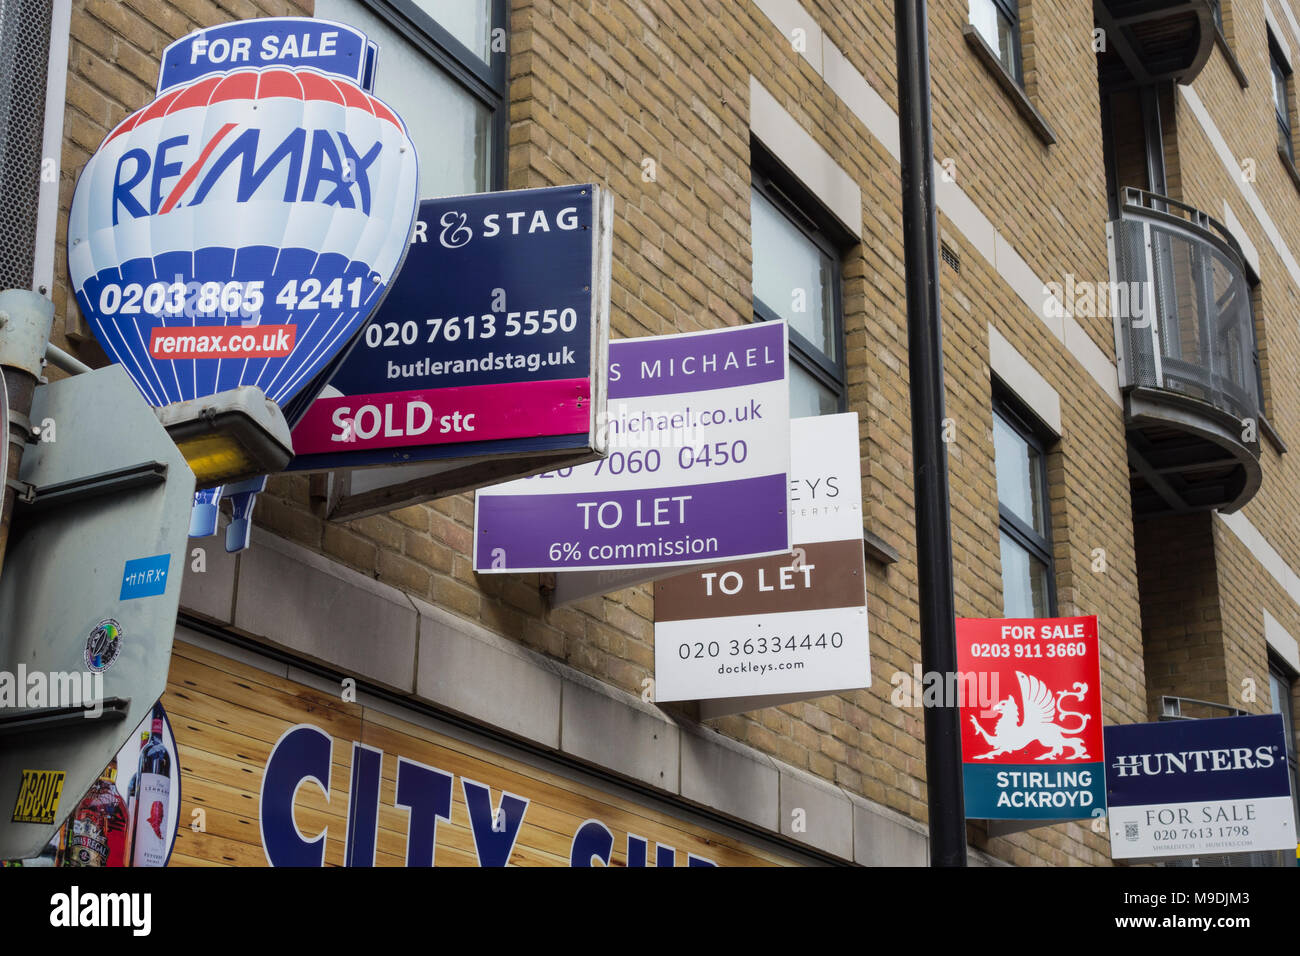 En vue de la vente et de laisser des signes dans Shoreditch, dans l'East End londonien. Banque D'Images